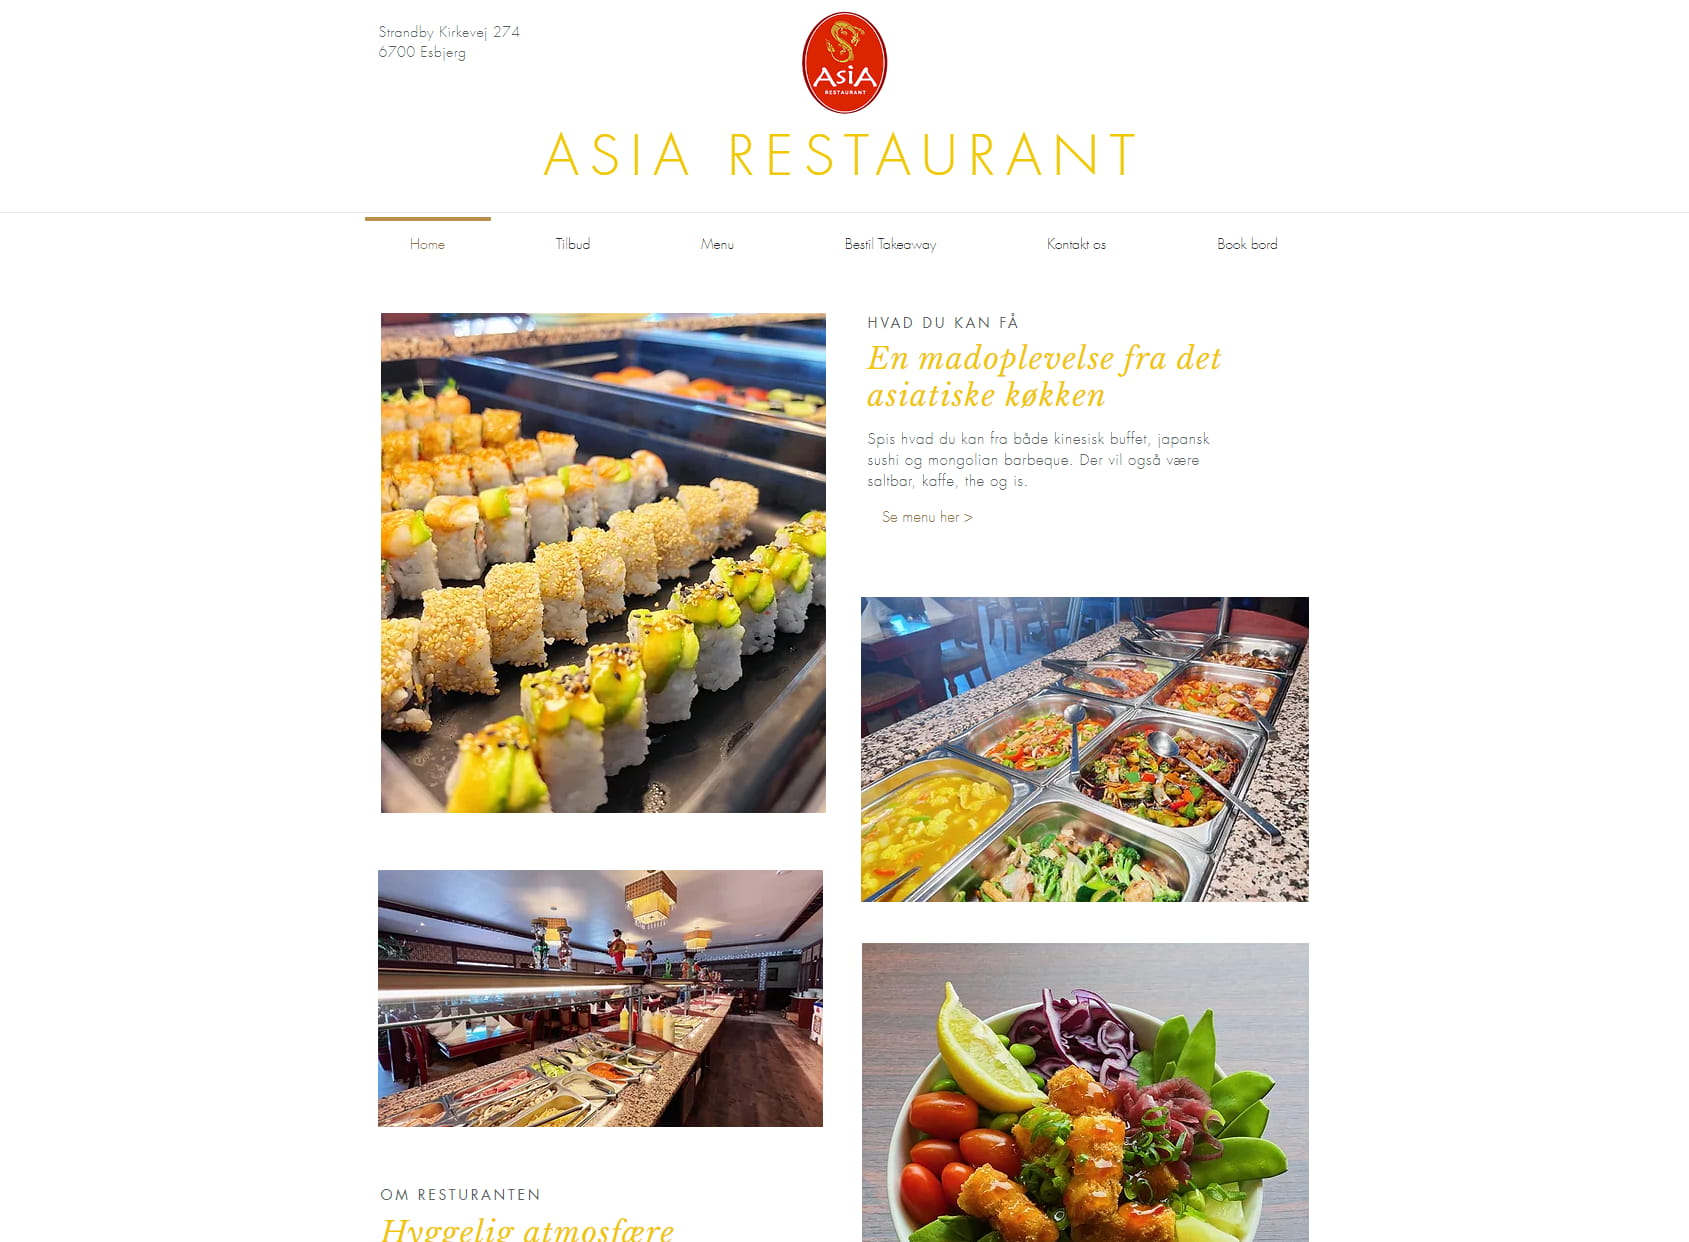 Asia Restaurant Esbjerg